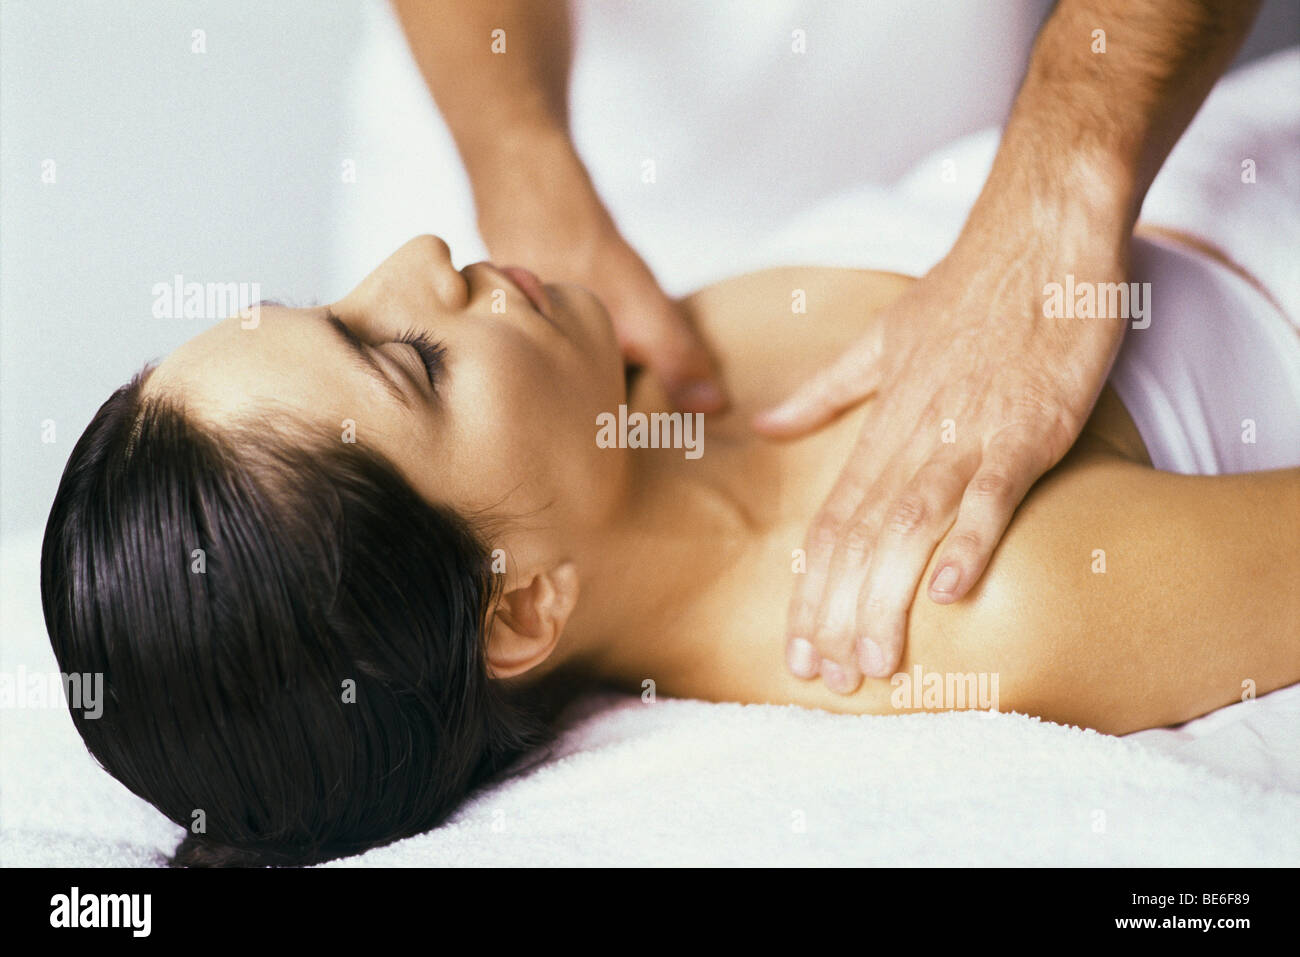 Woman enjoying massage Stock Photo